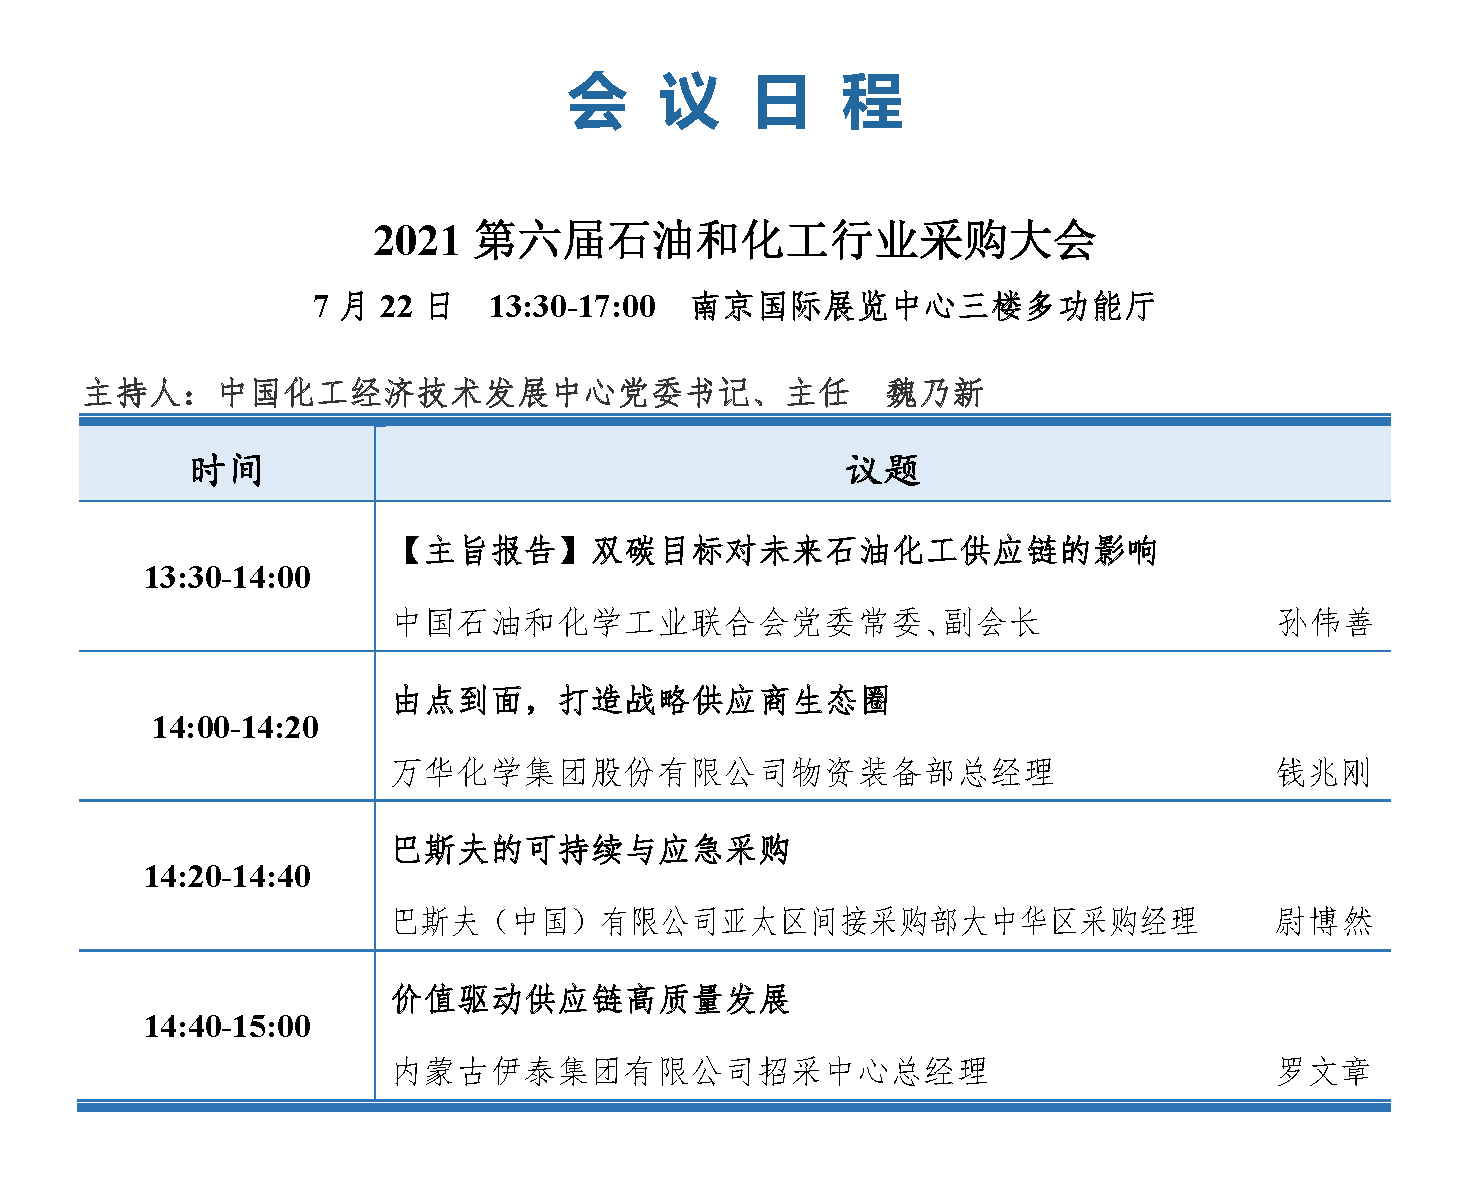 会议手册-2021中国石化行业采购大会_页面_13.png